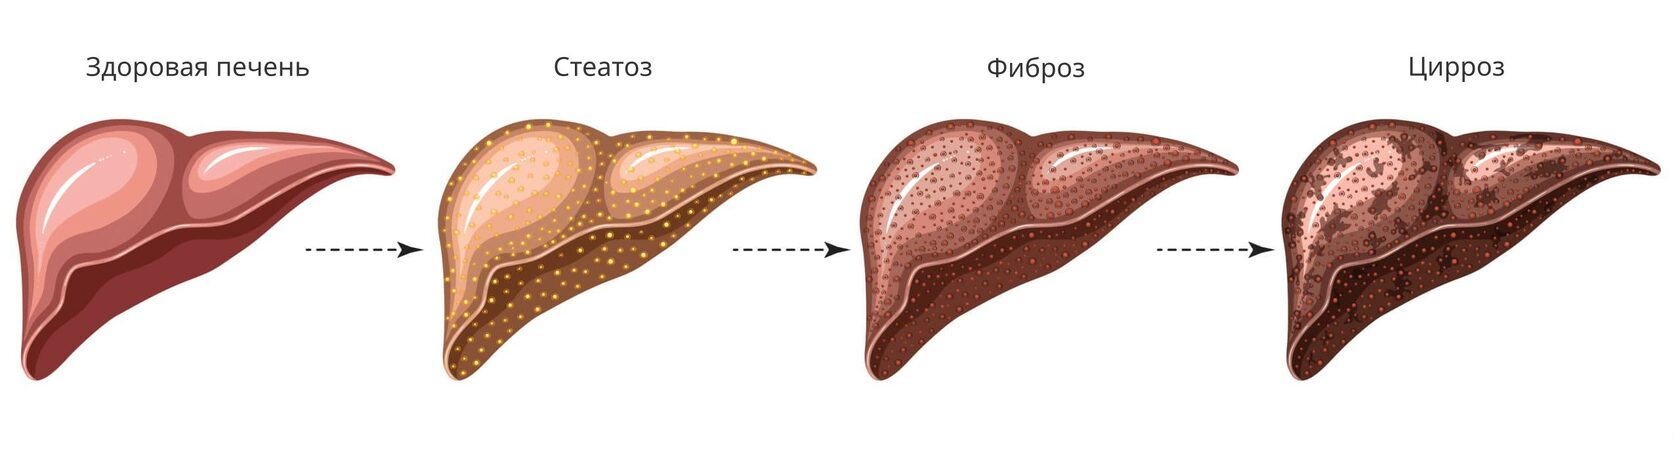 Жировой гепатоз и цирроз